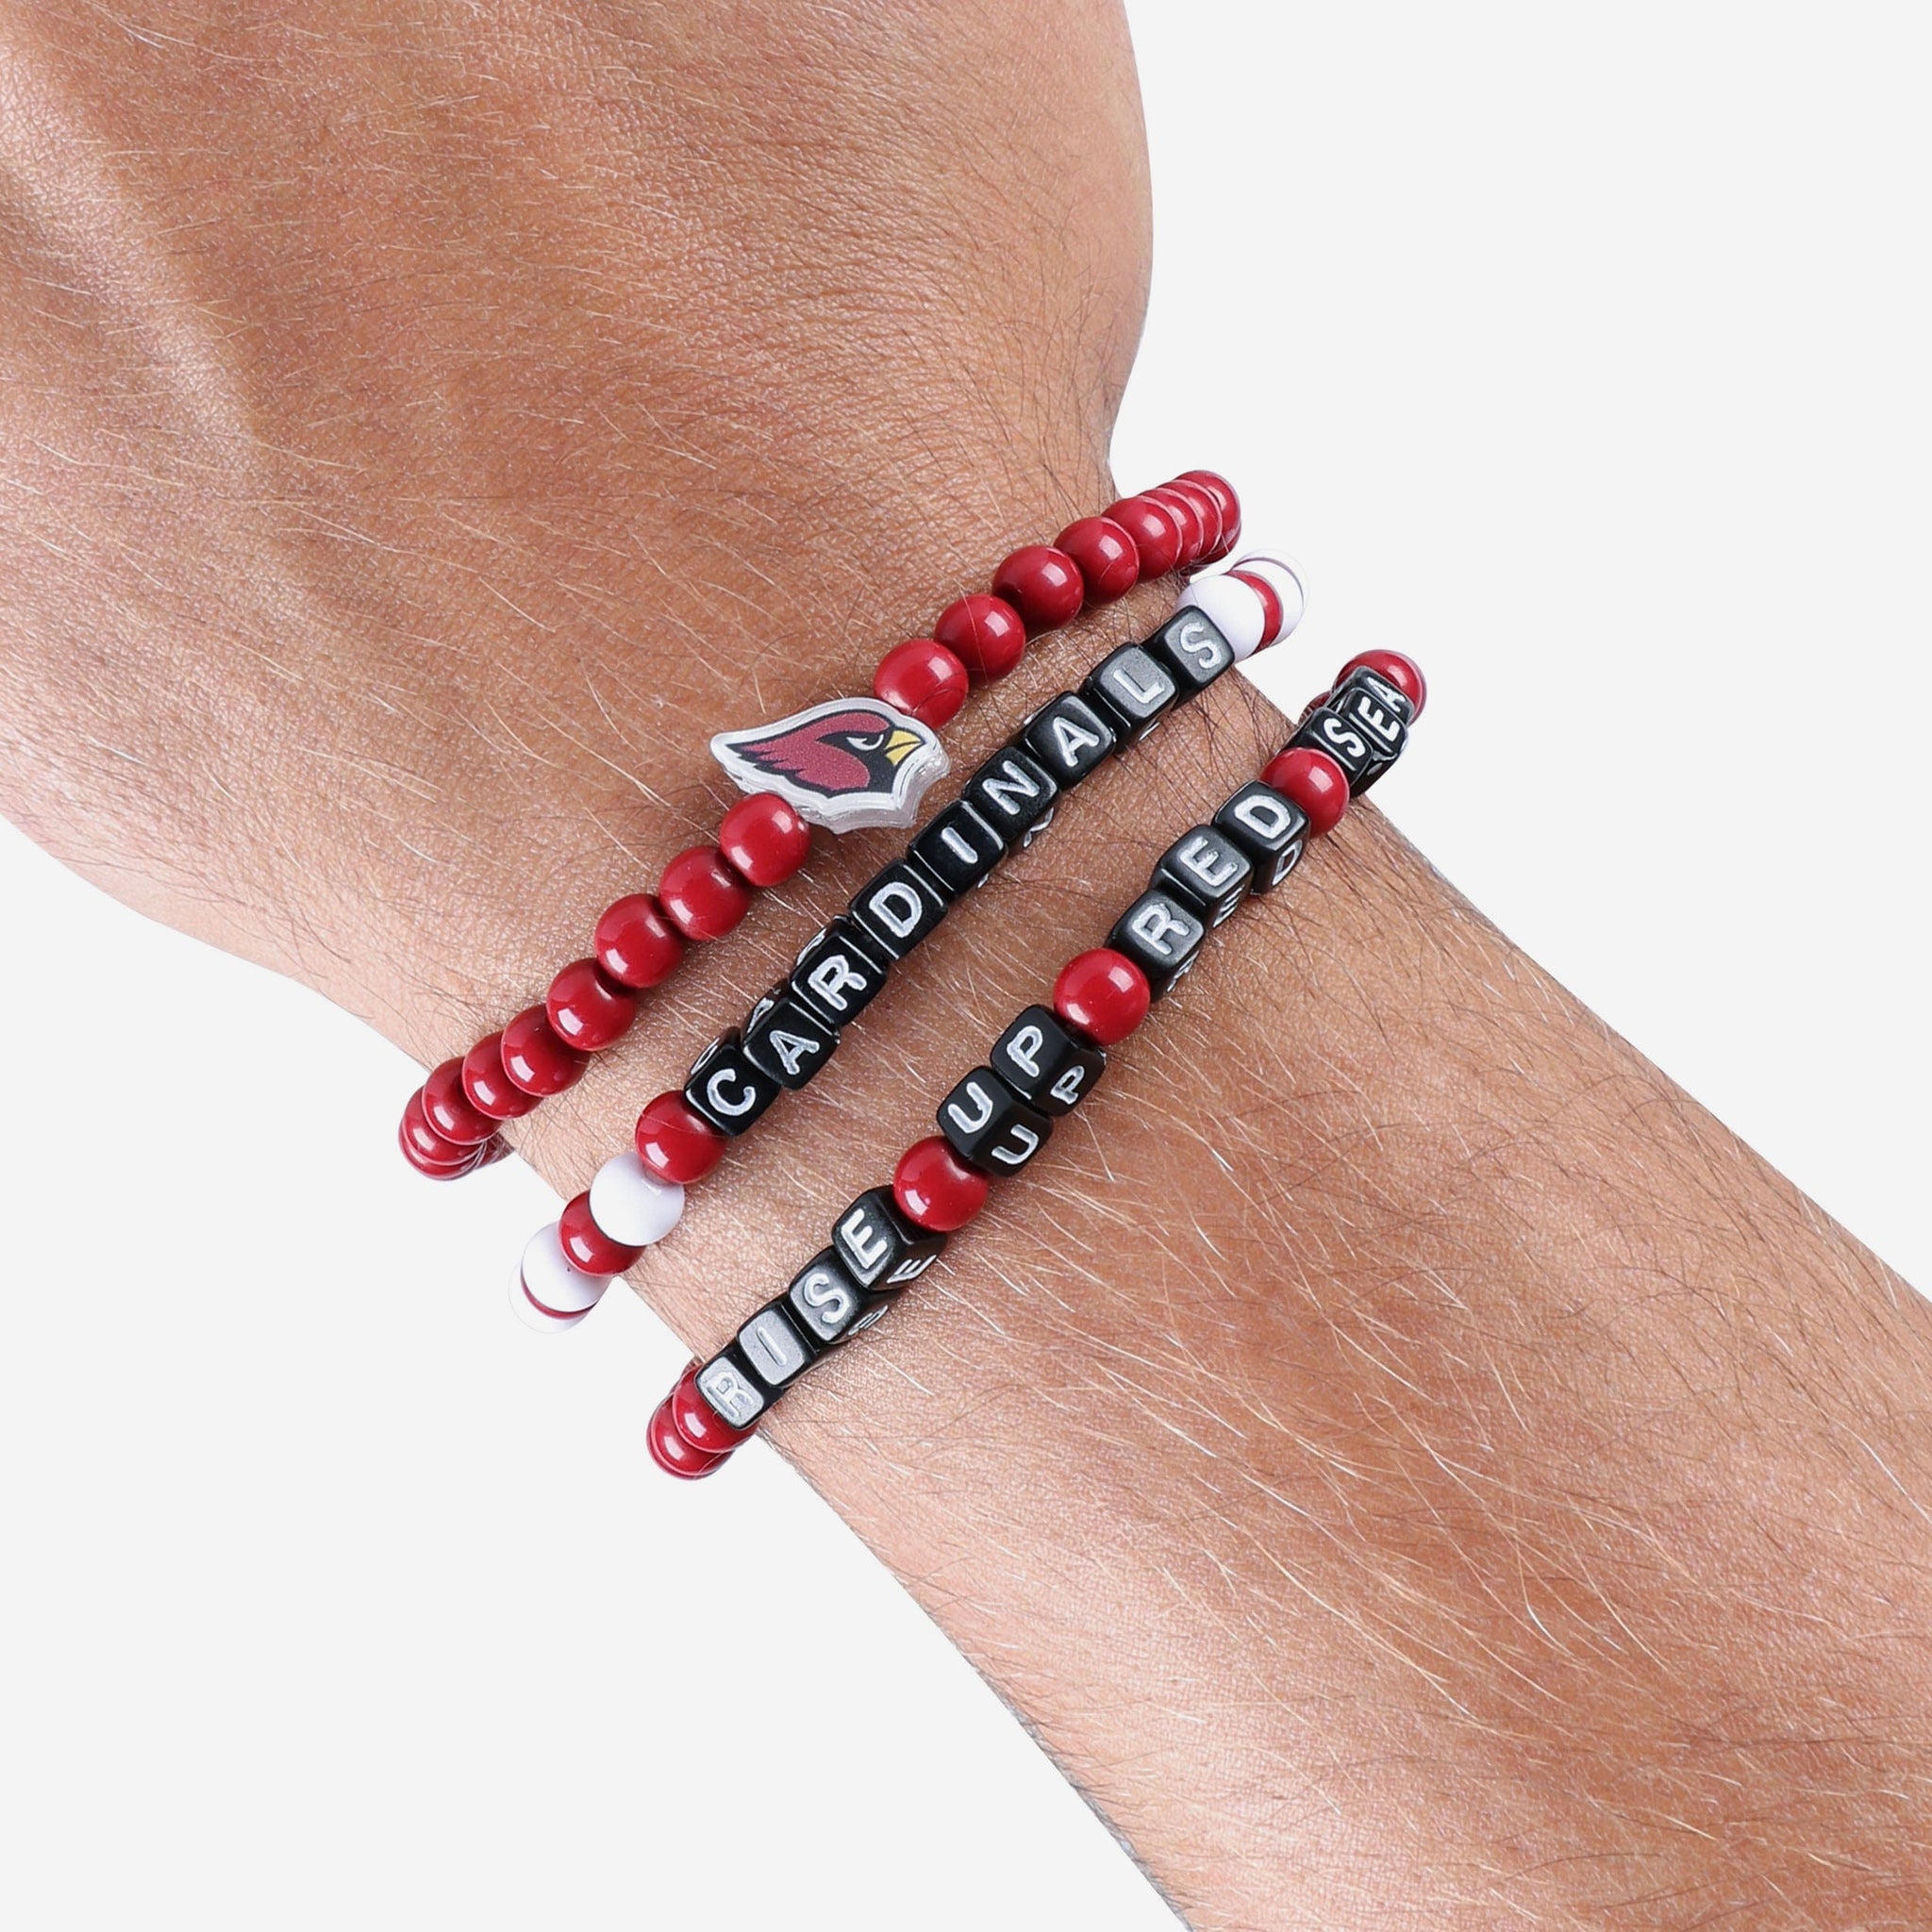 louisville cardinal bracelet